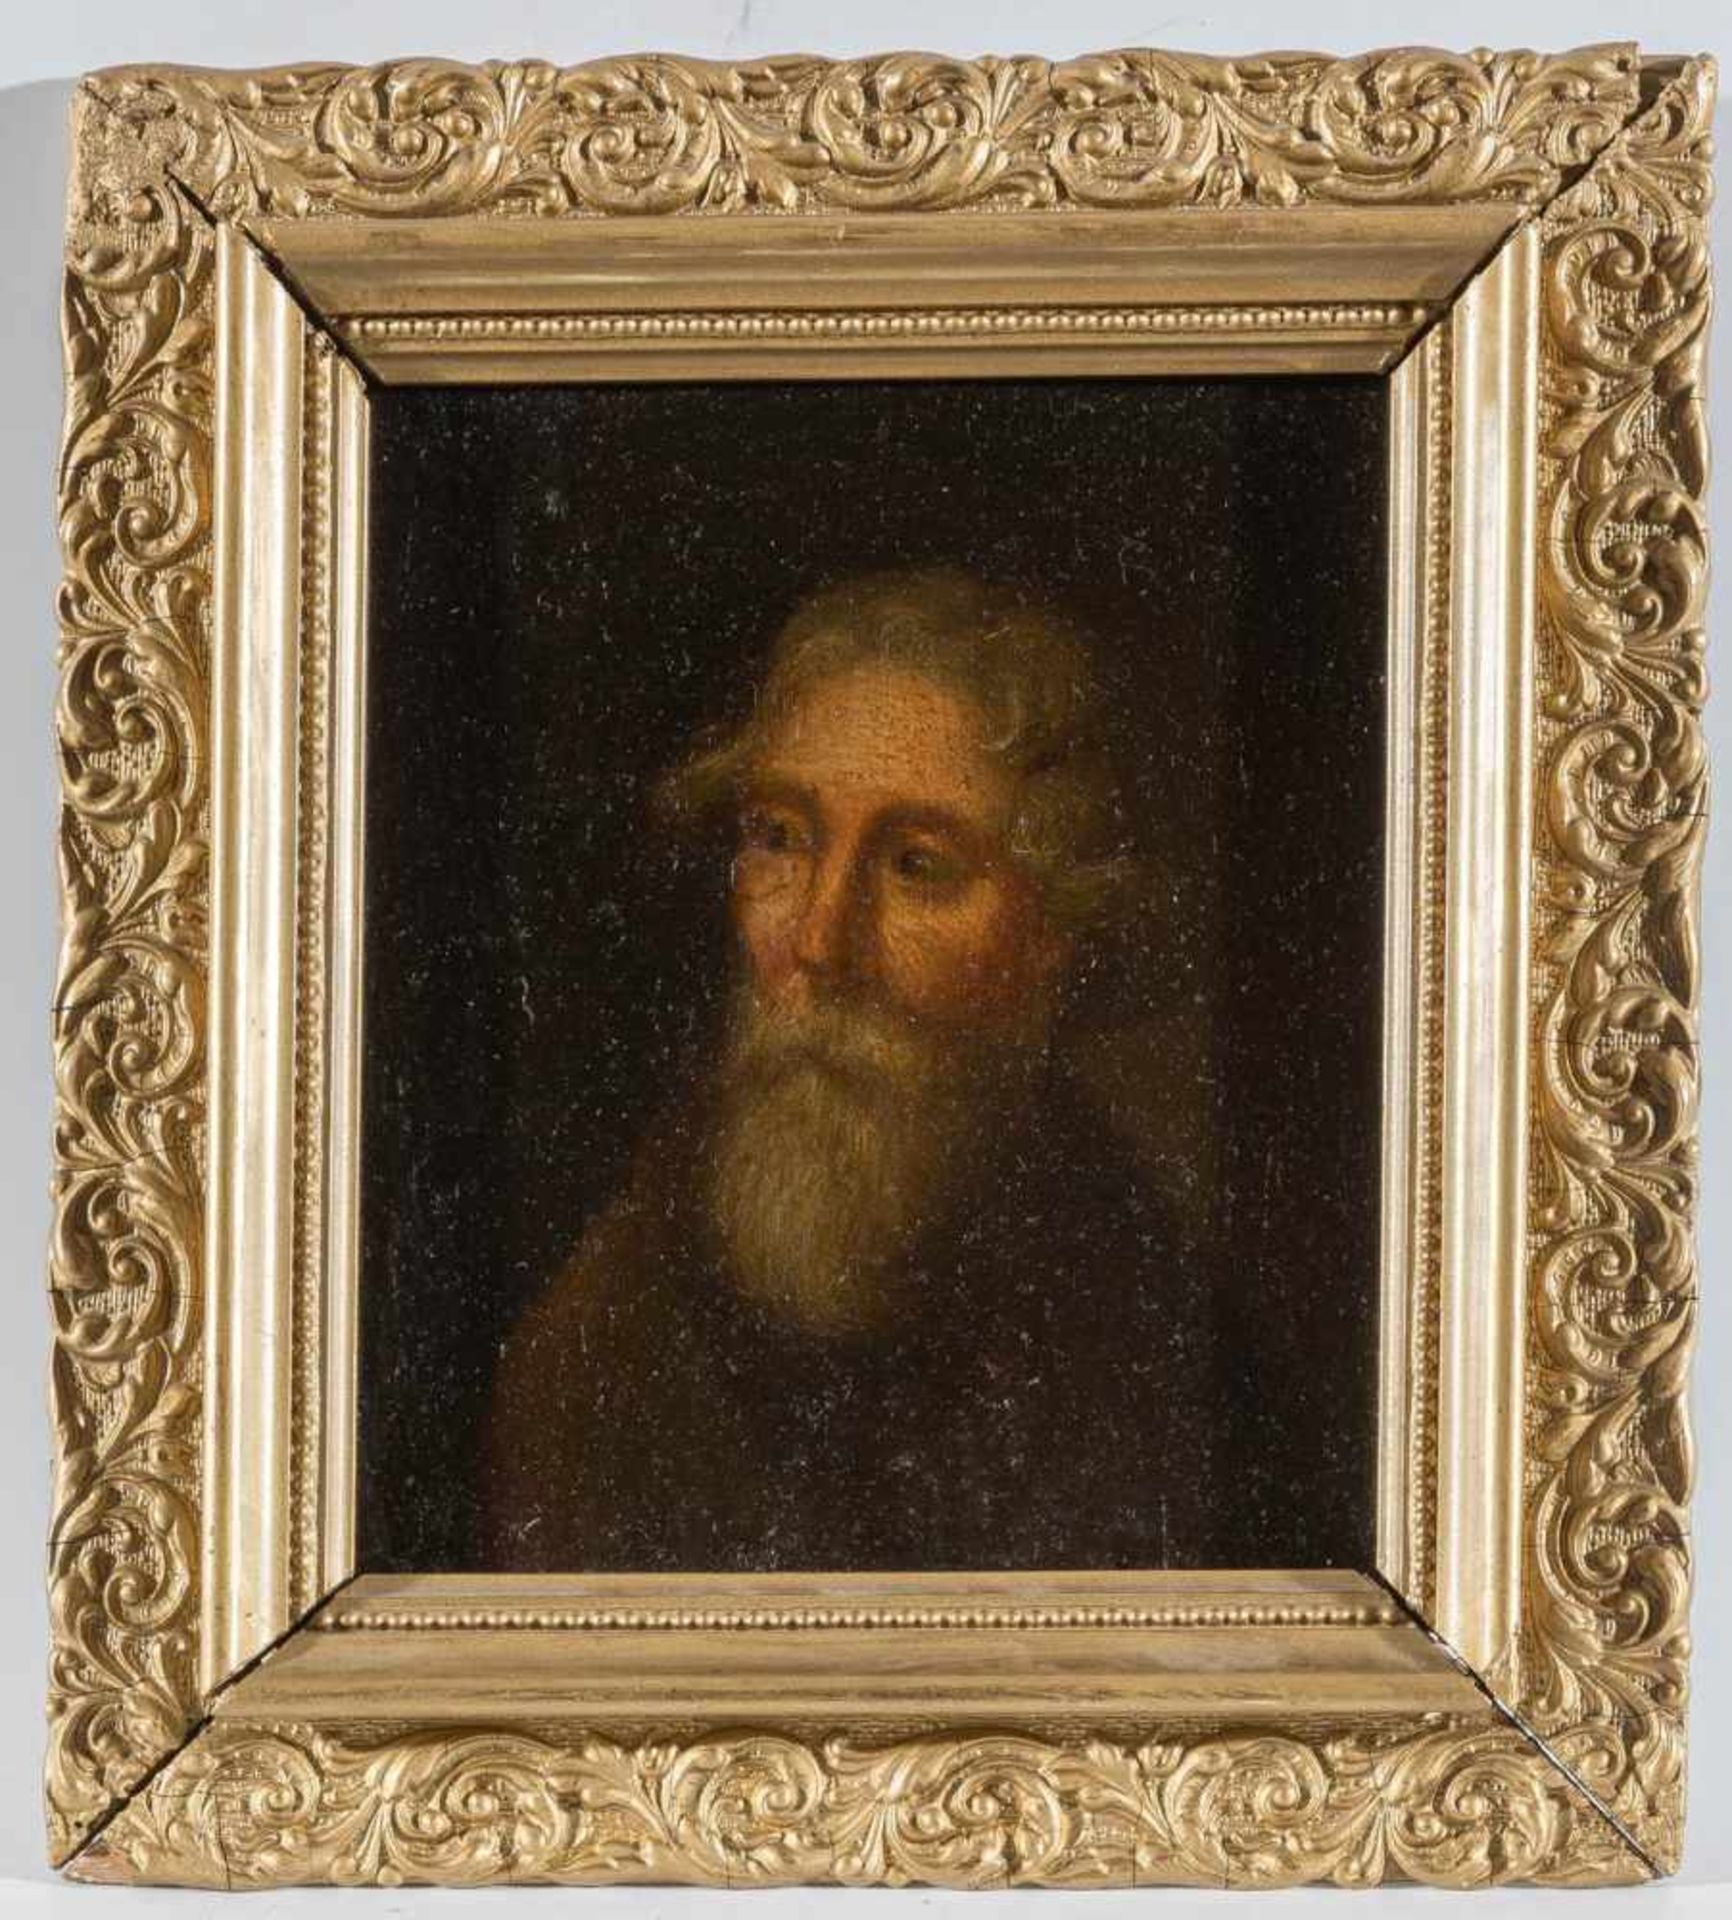 Unbekannte MalerDrei Porträtsa) Brustbildnis eines Gelehrten, 18. Jh. Holz 15×17 cm. R. b)